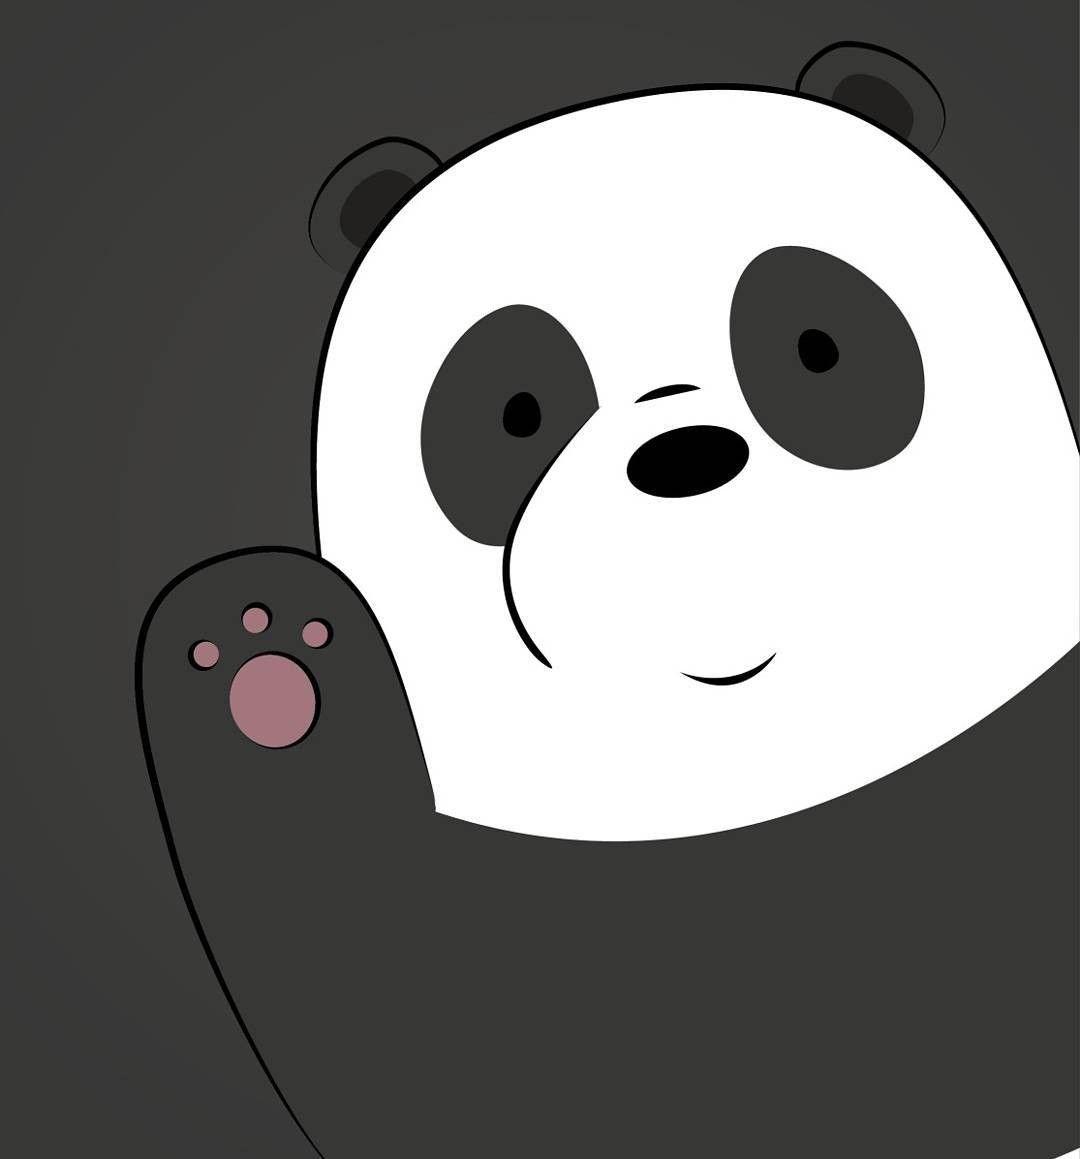 Cute Wallpaper Cute Panda Cartoon Images